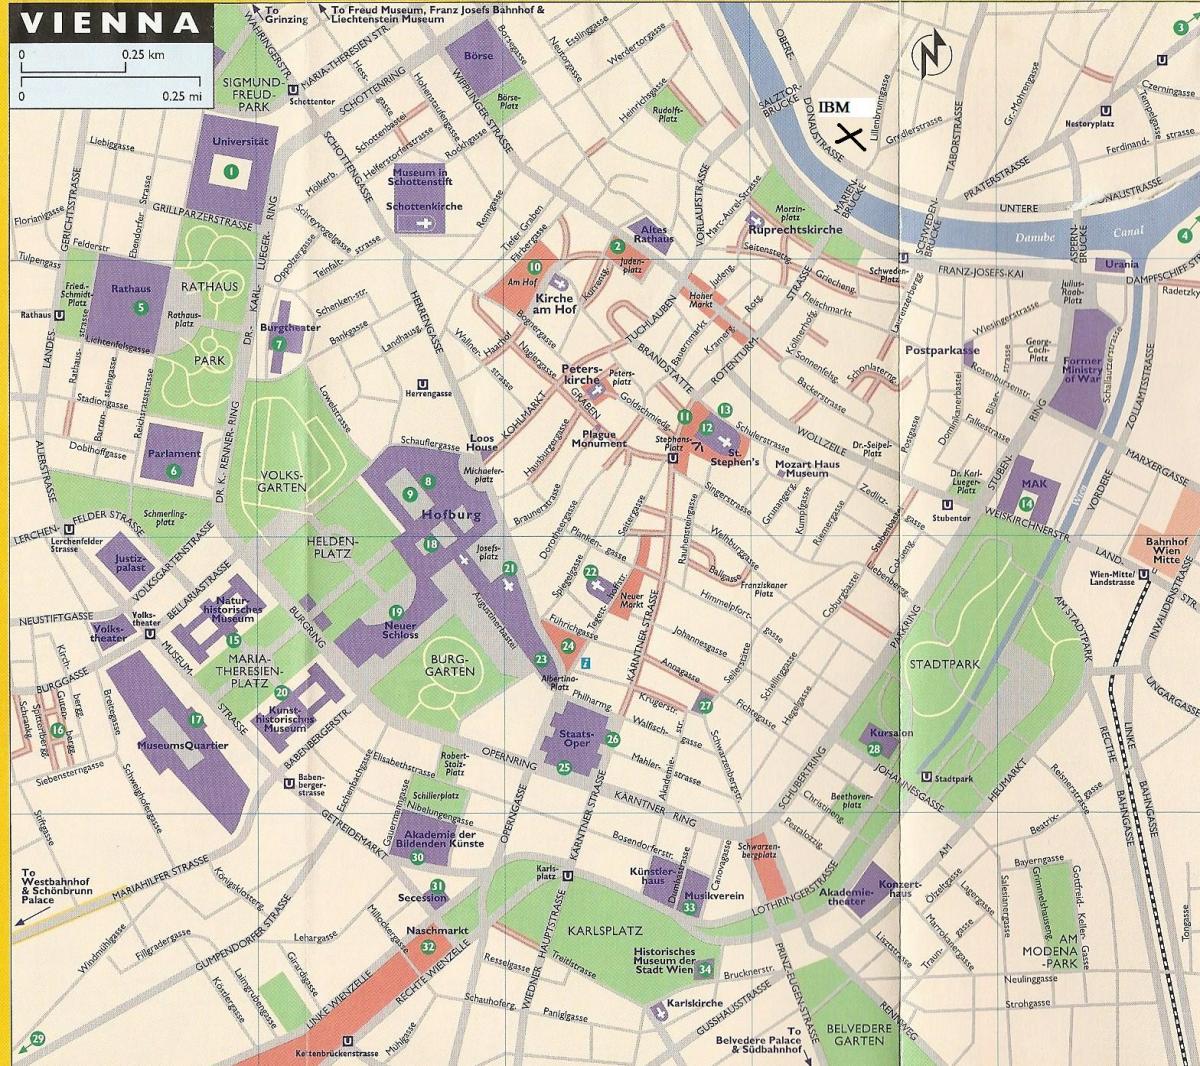 Mapa obchodných domoch vo Viedni 